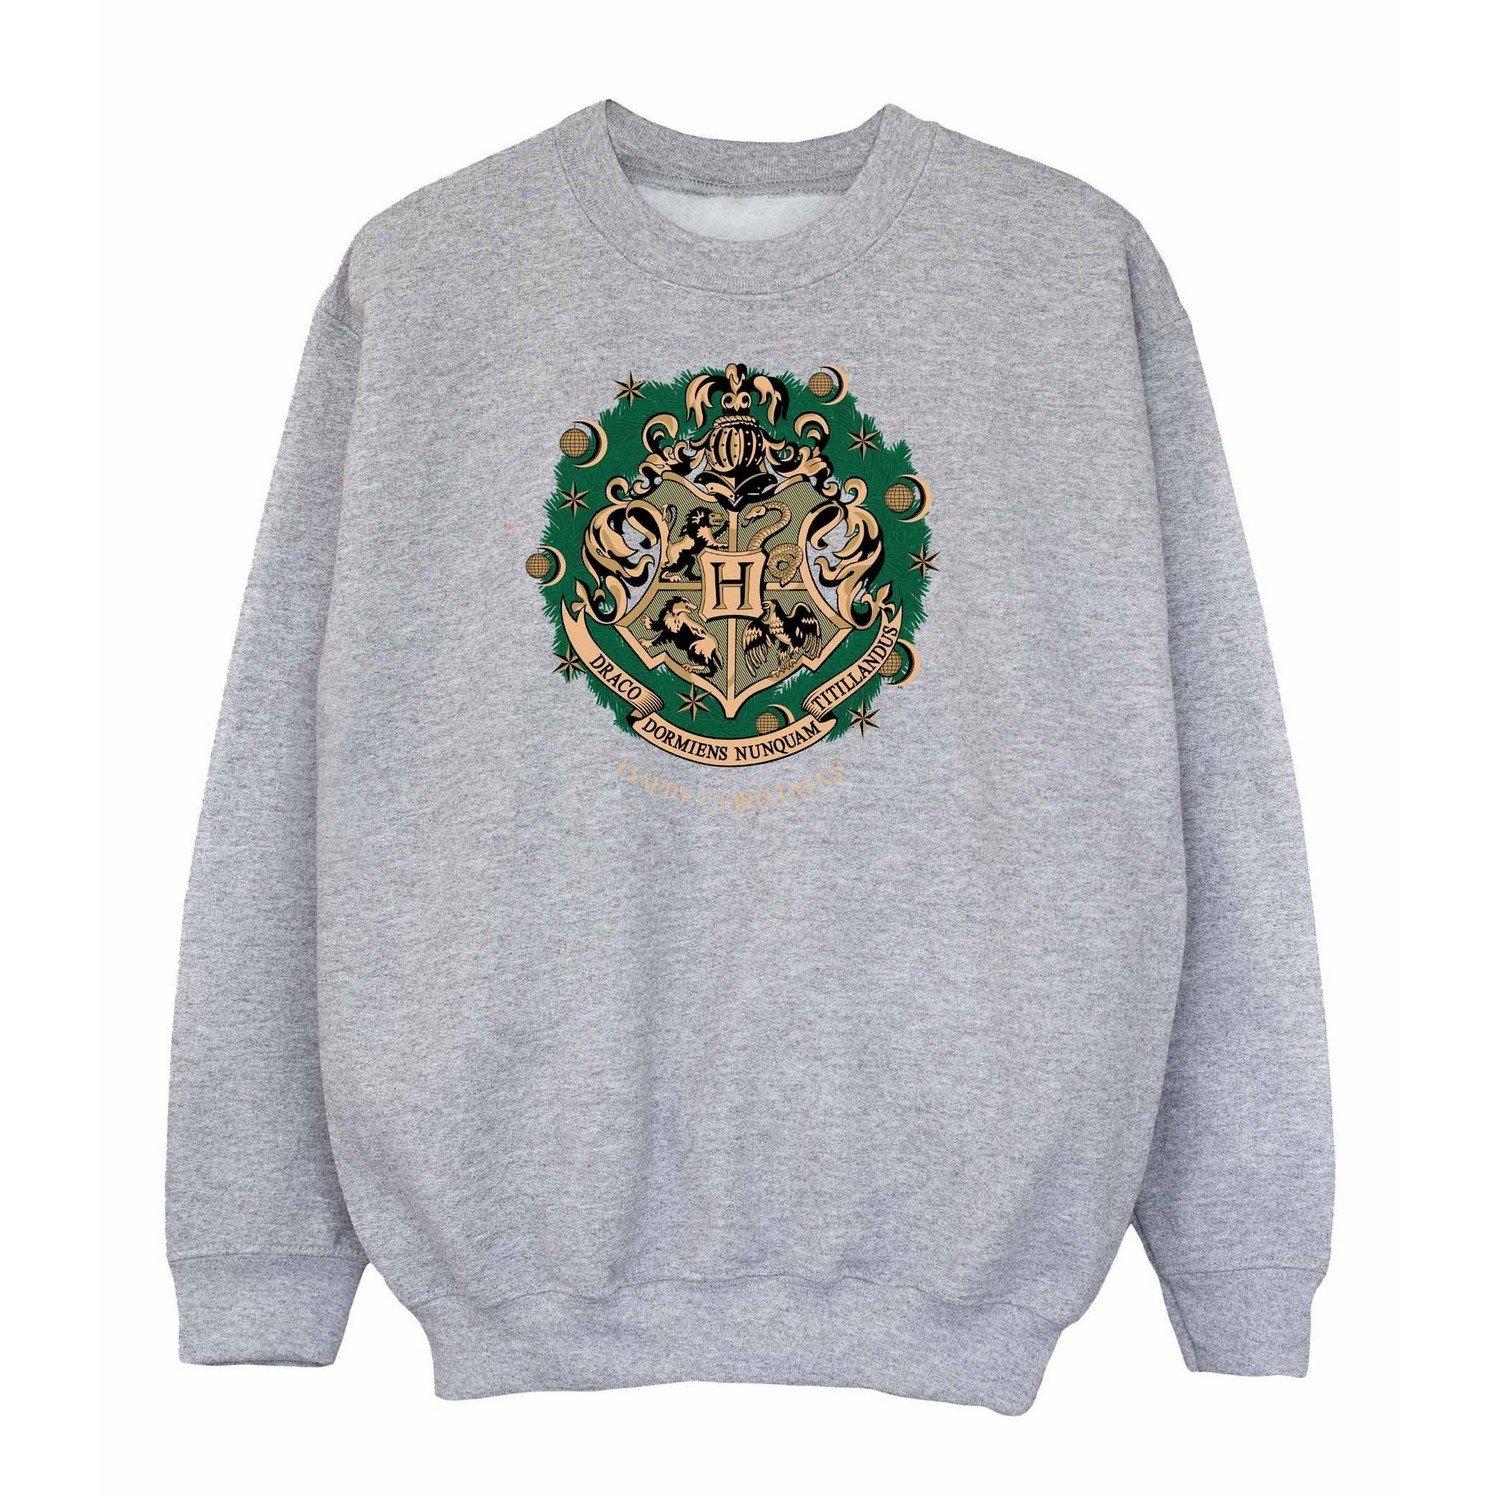 Sweatshirt Weihnachtliches Design Unisex Grau 128 von Harry Potter